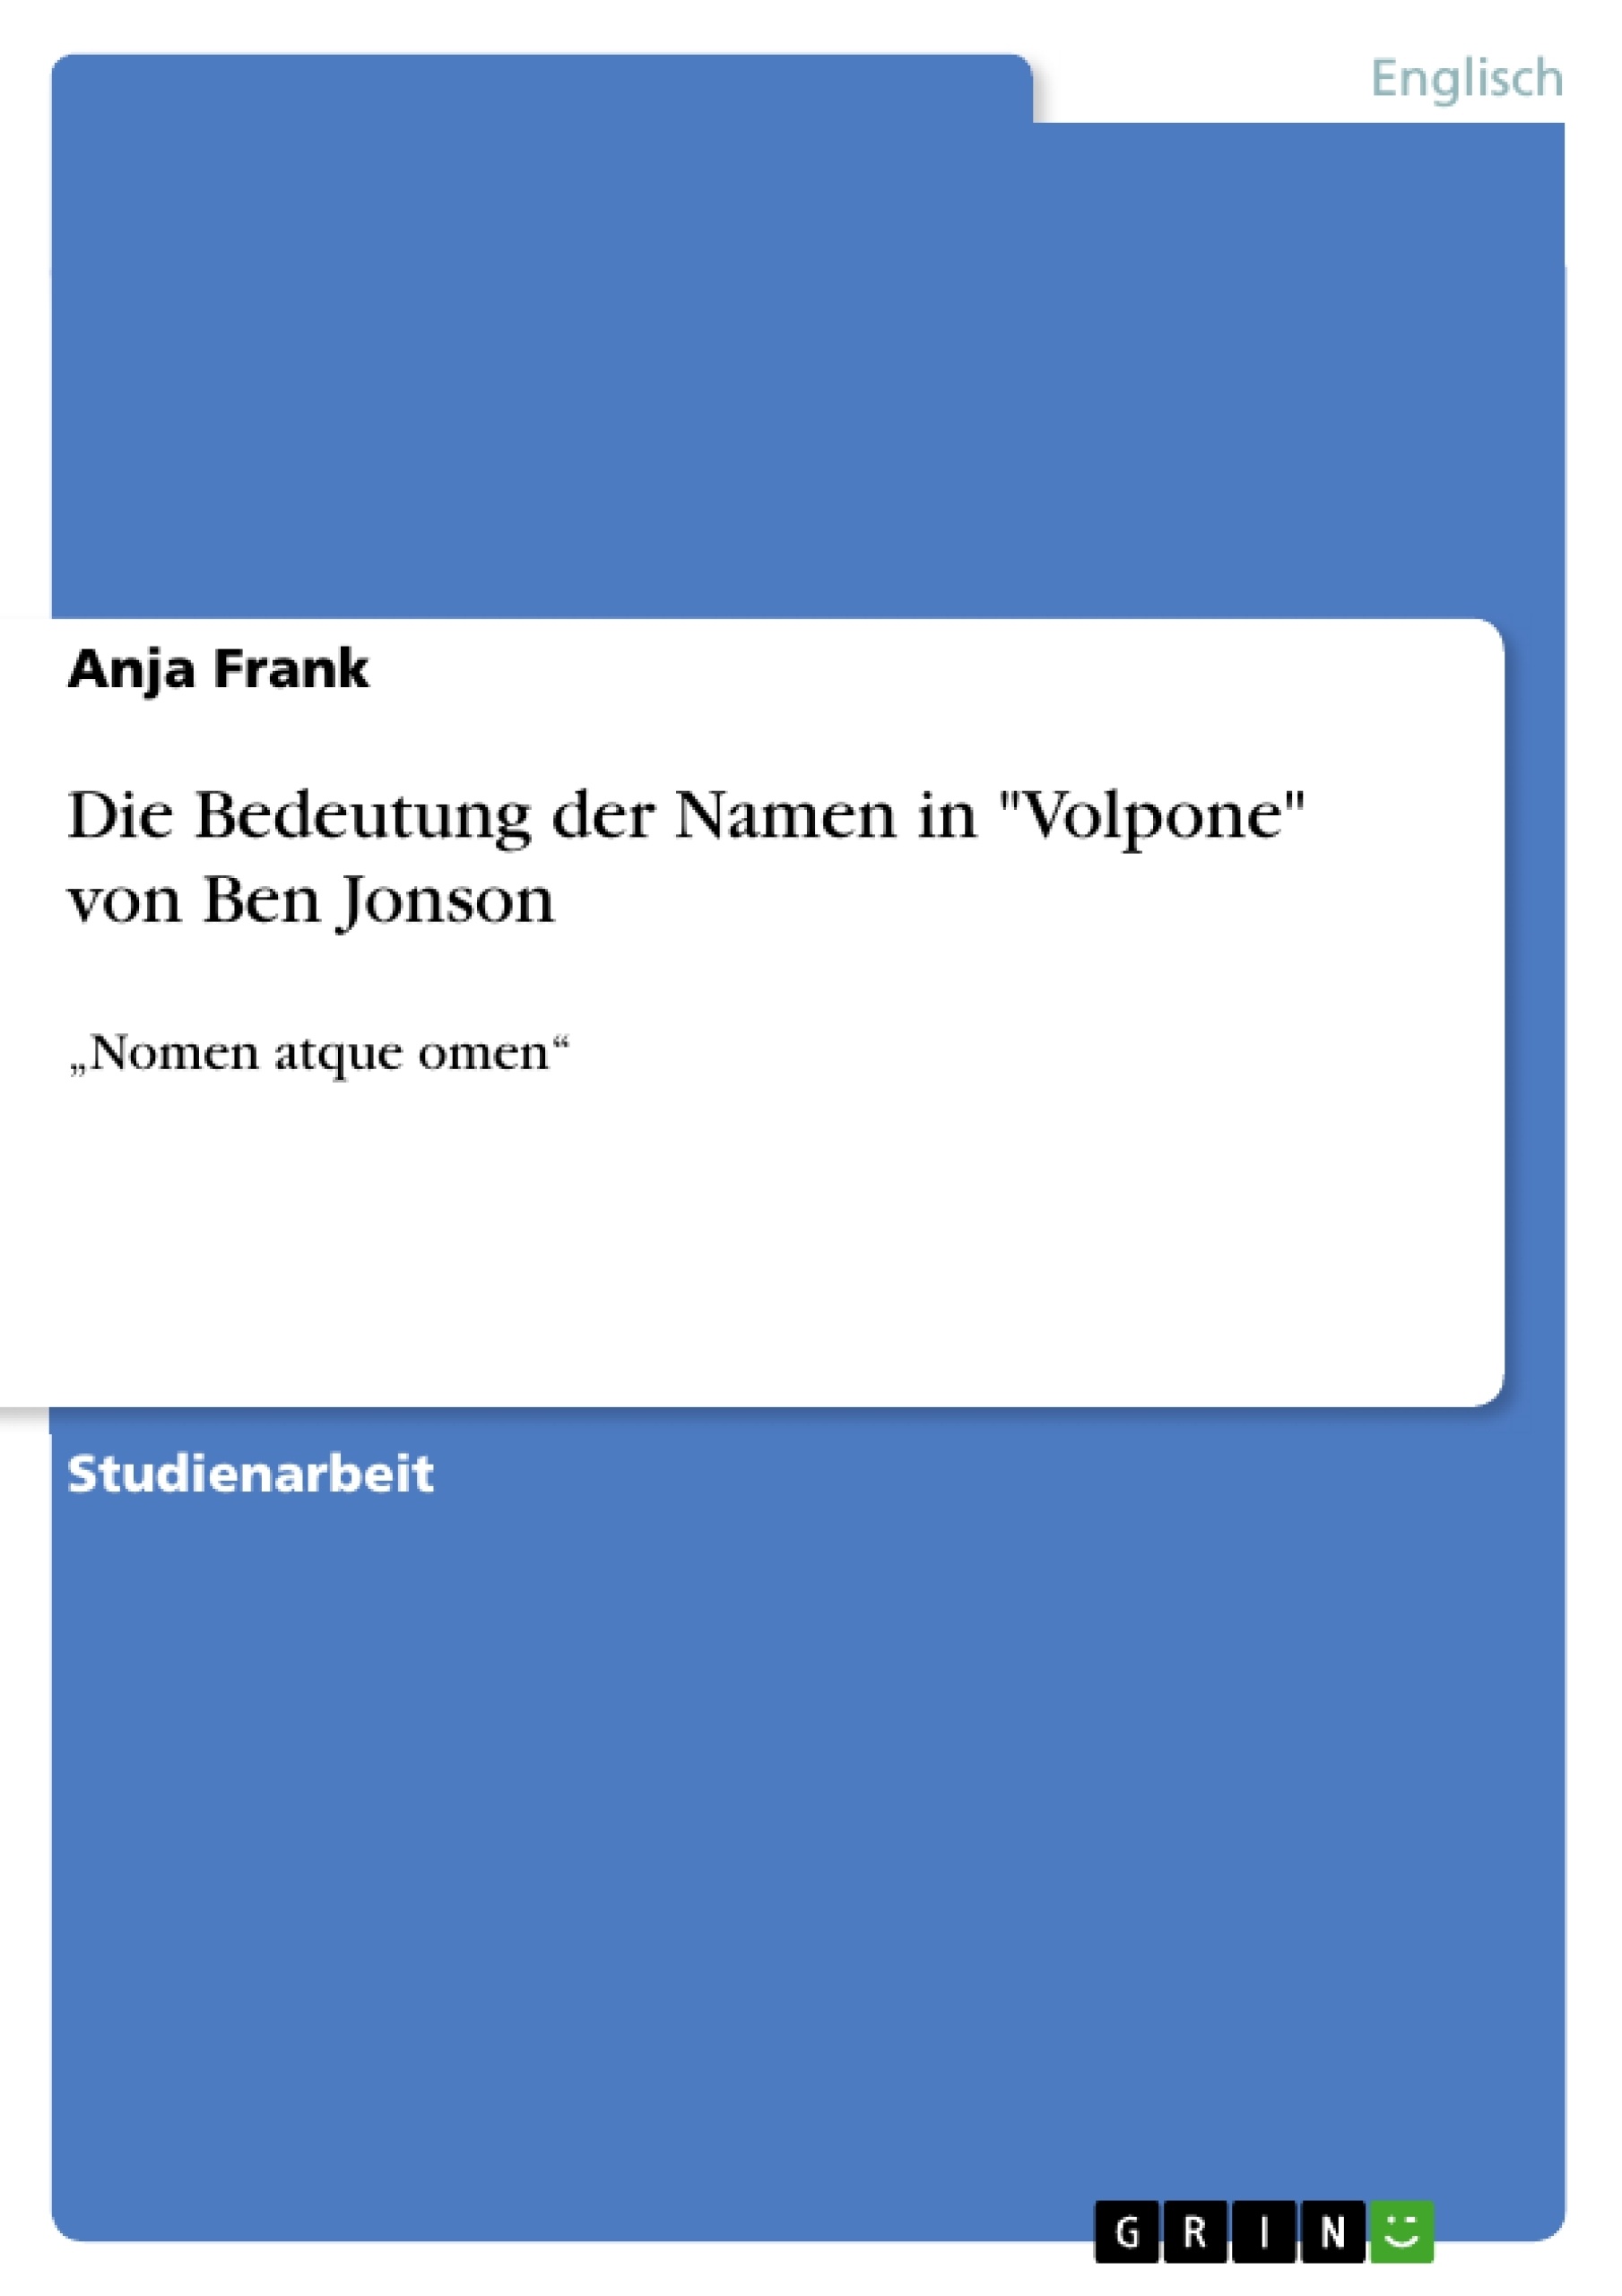 Titre: Die Bedeutung der Namen in "Volpone" von Ben Jonson